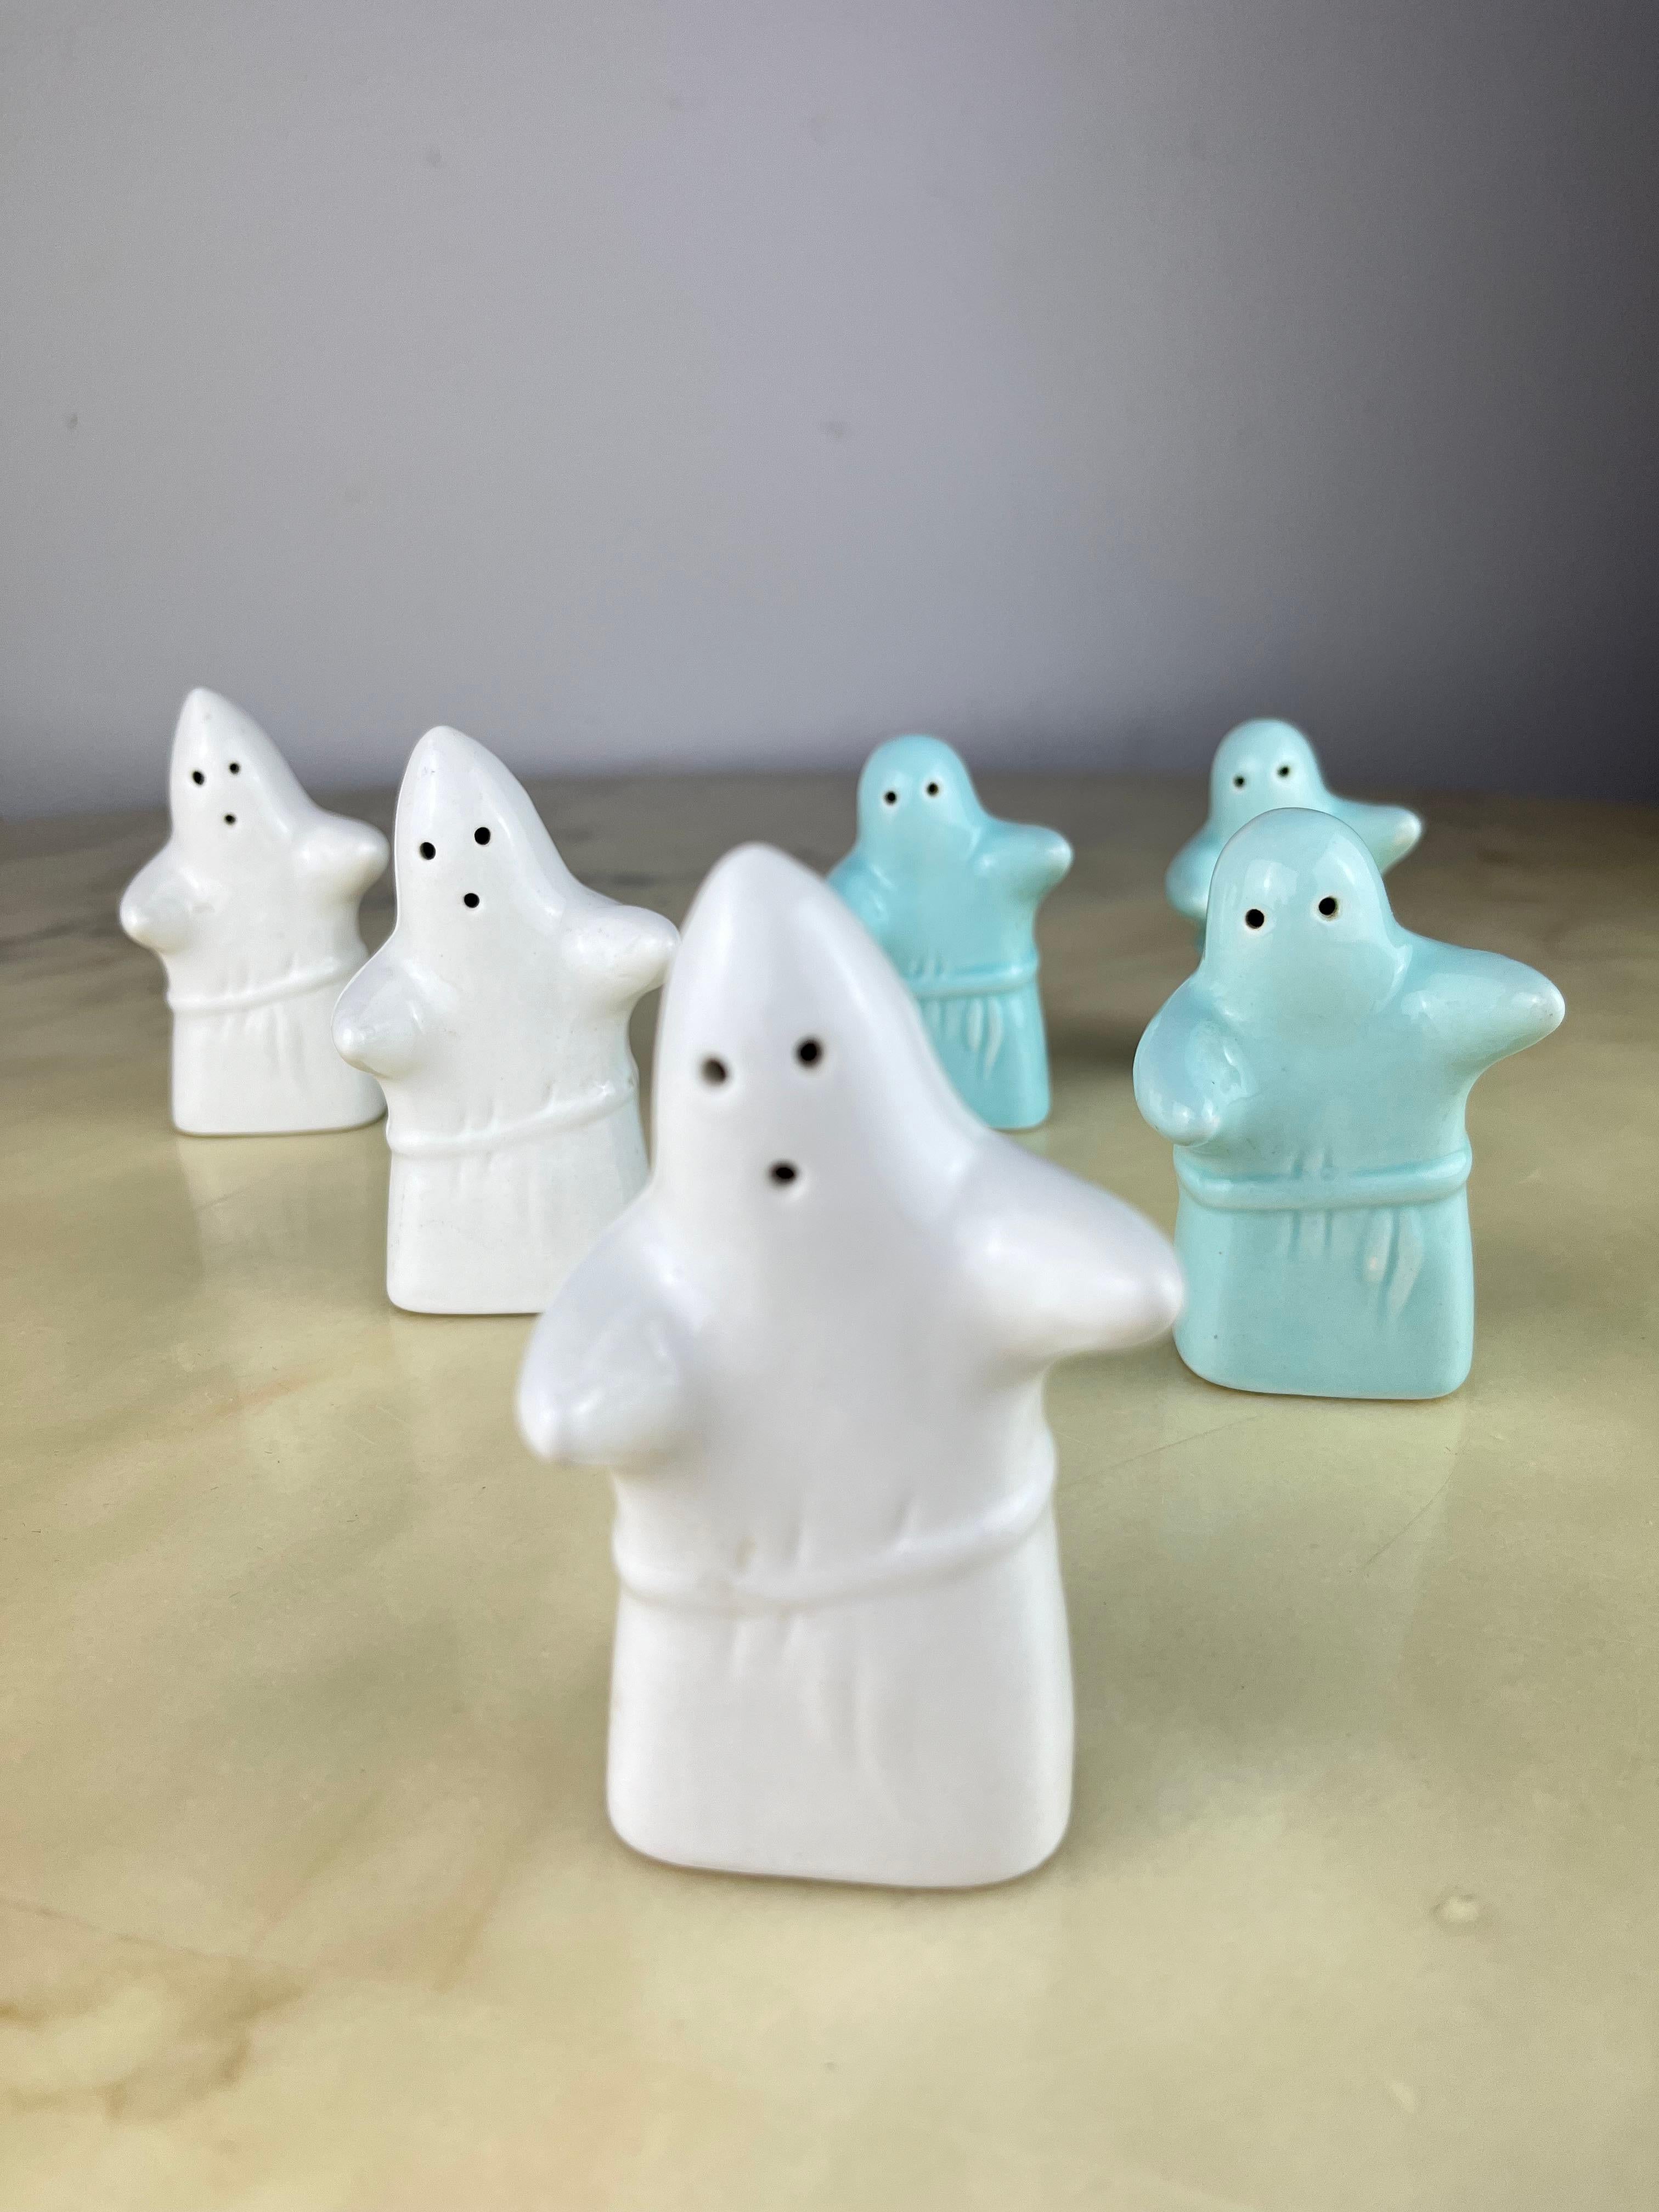 Ensemble de 6 distributeurs de sel et de poivre fantômes, Italie, années 1980 
Porcelaine. En excellent état, il fera sourire vos invités.